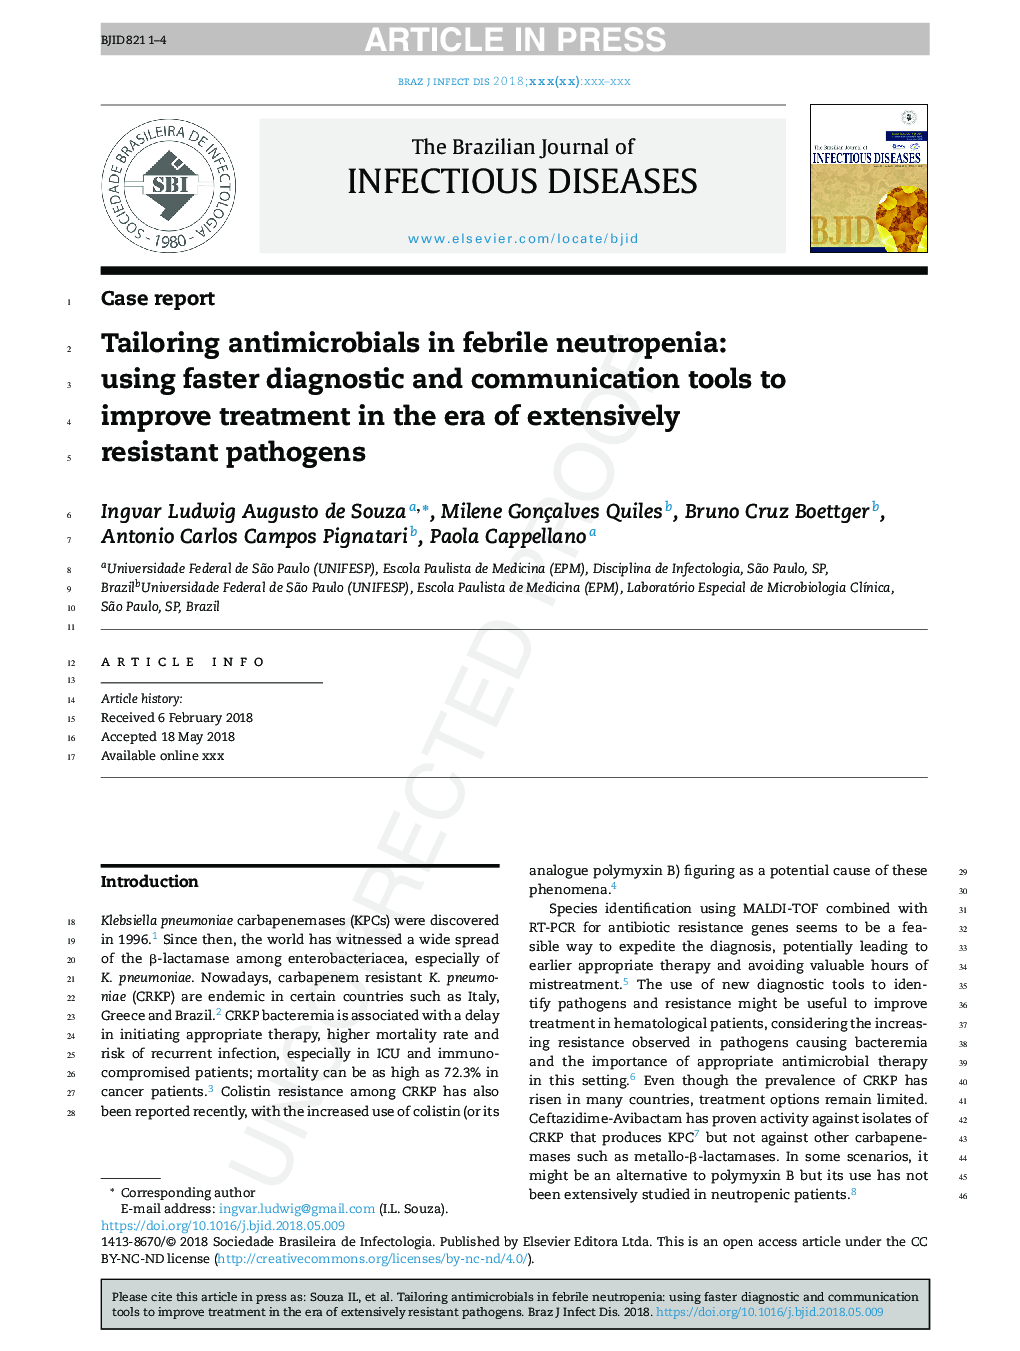 باکتری های ضد میکروبی در نوتروپنی تب: با استفاده از ابزارهای تشخیصی و ارتباطی سریعتر برای بهبود درمان در عصر پاتوژن های مقاوم در برابر بیماری 